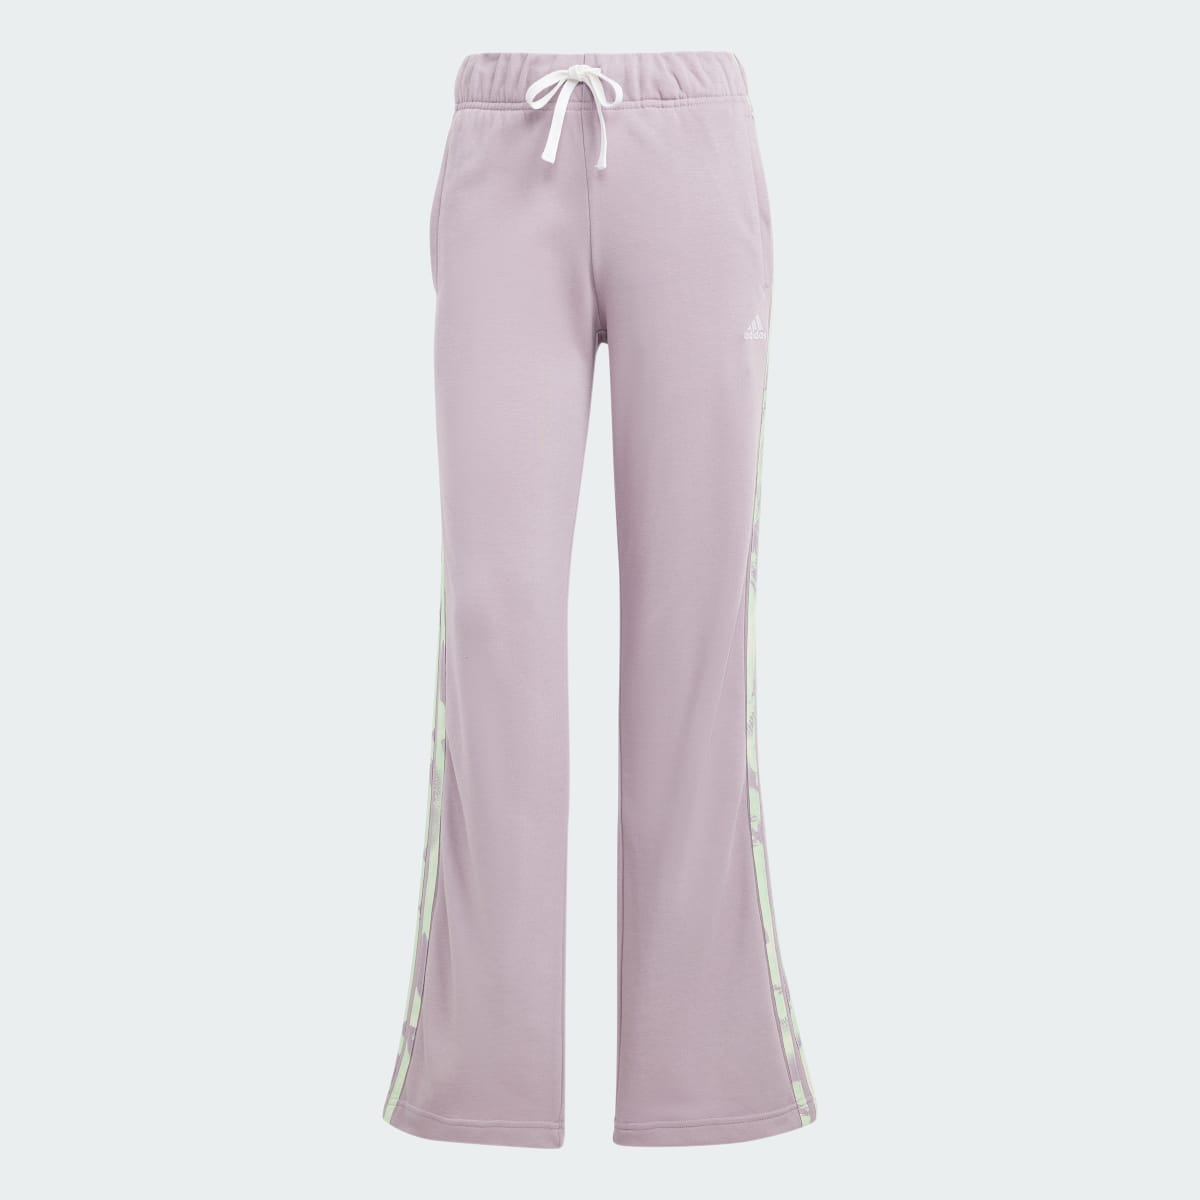 Adidas Pants de Felpa Francesa Estampado Floral 3 Franjas. 4